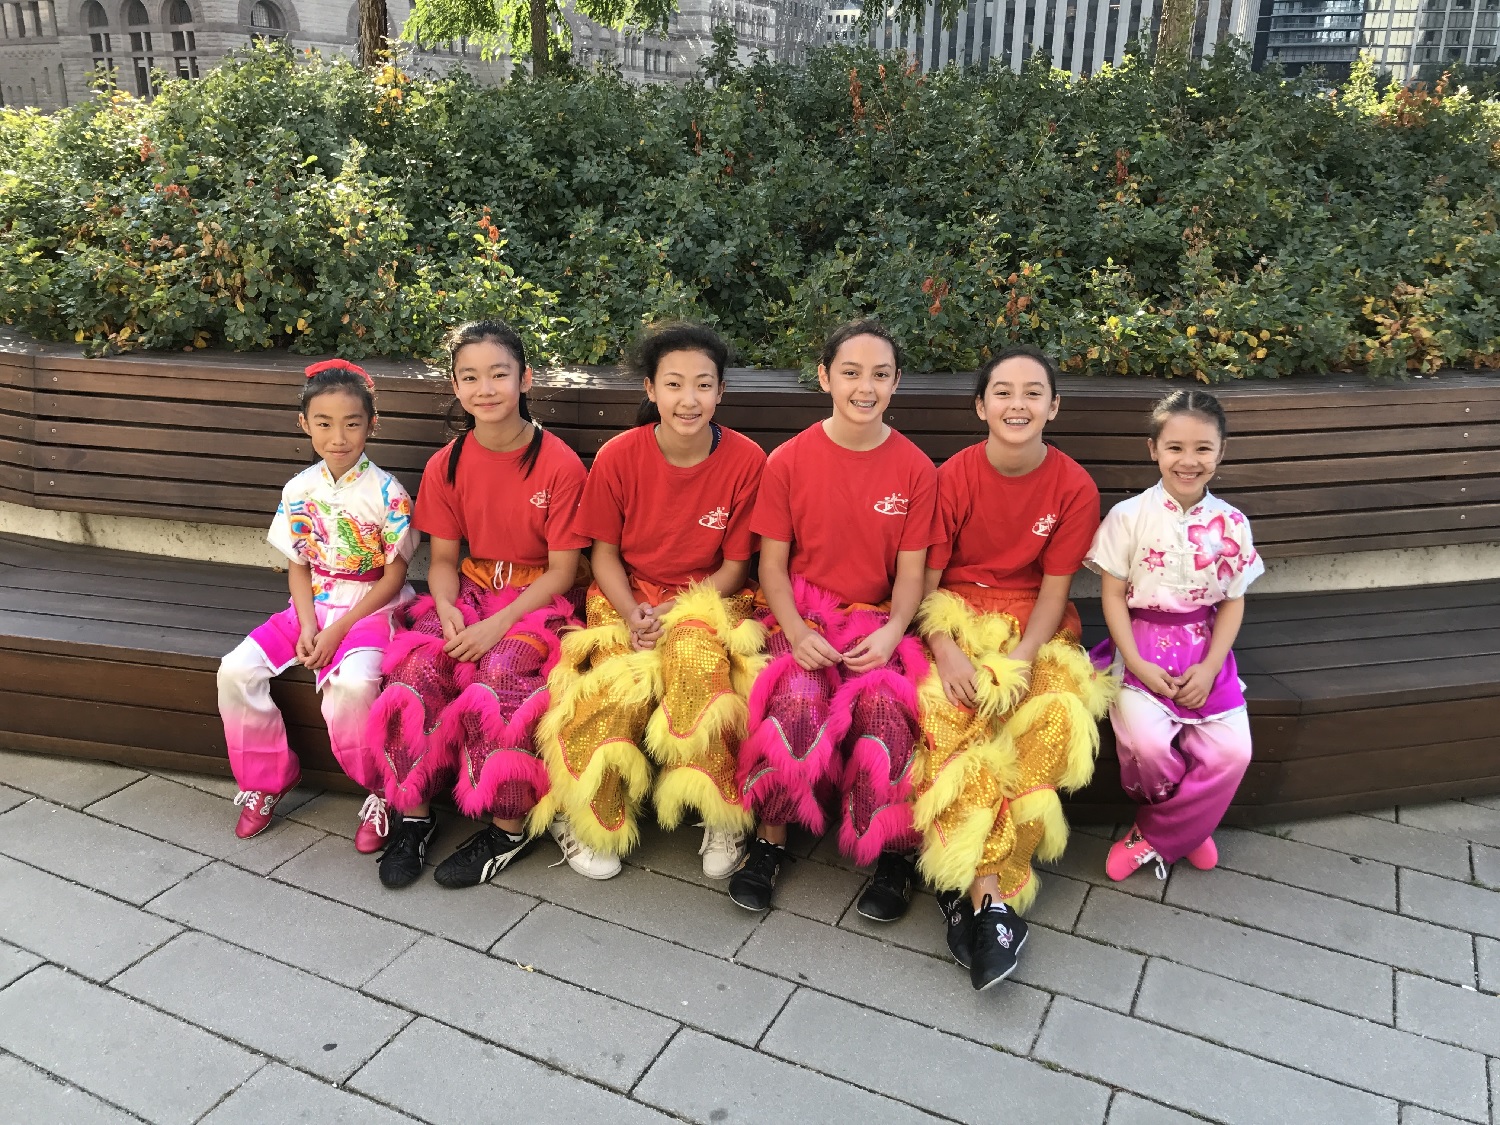 wayland-li-wushu-lion-dance-toronto-city-hall-china-national-day-2017-3.jpg